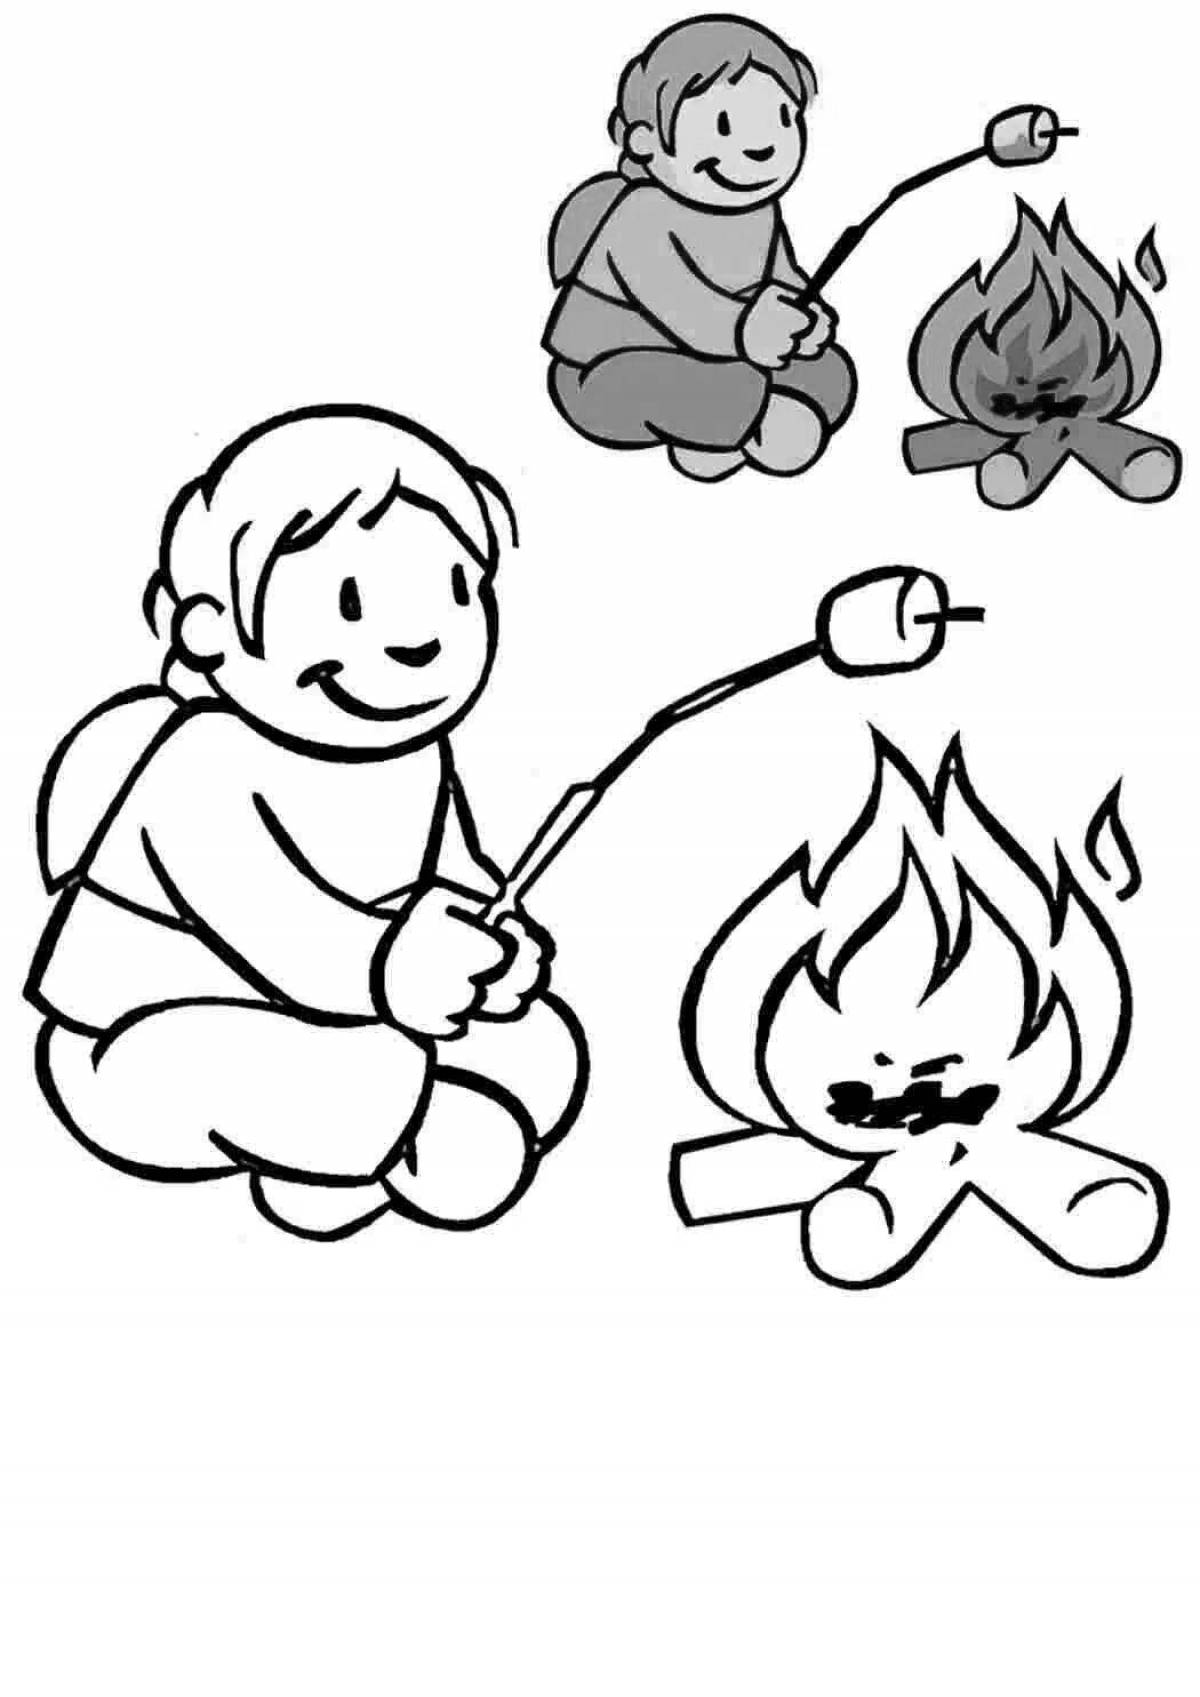 Amazing fiery friend fiery enemy coloring book for kids